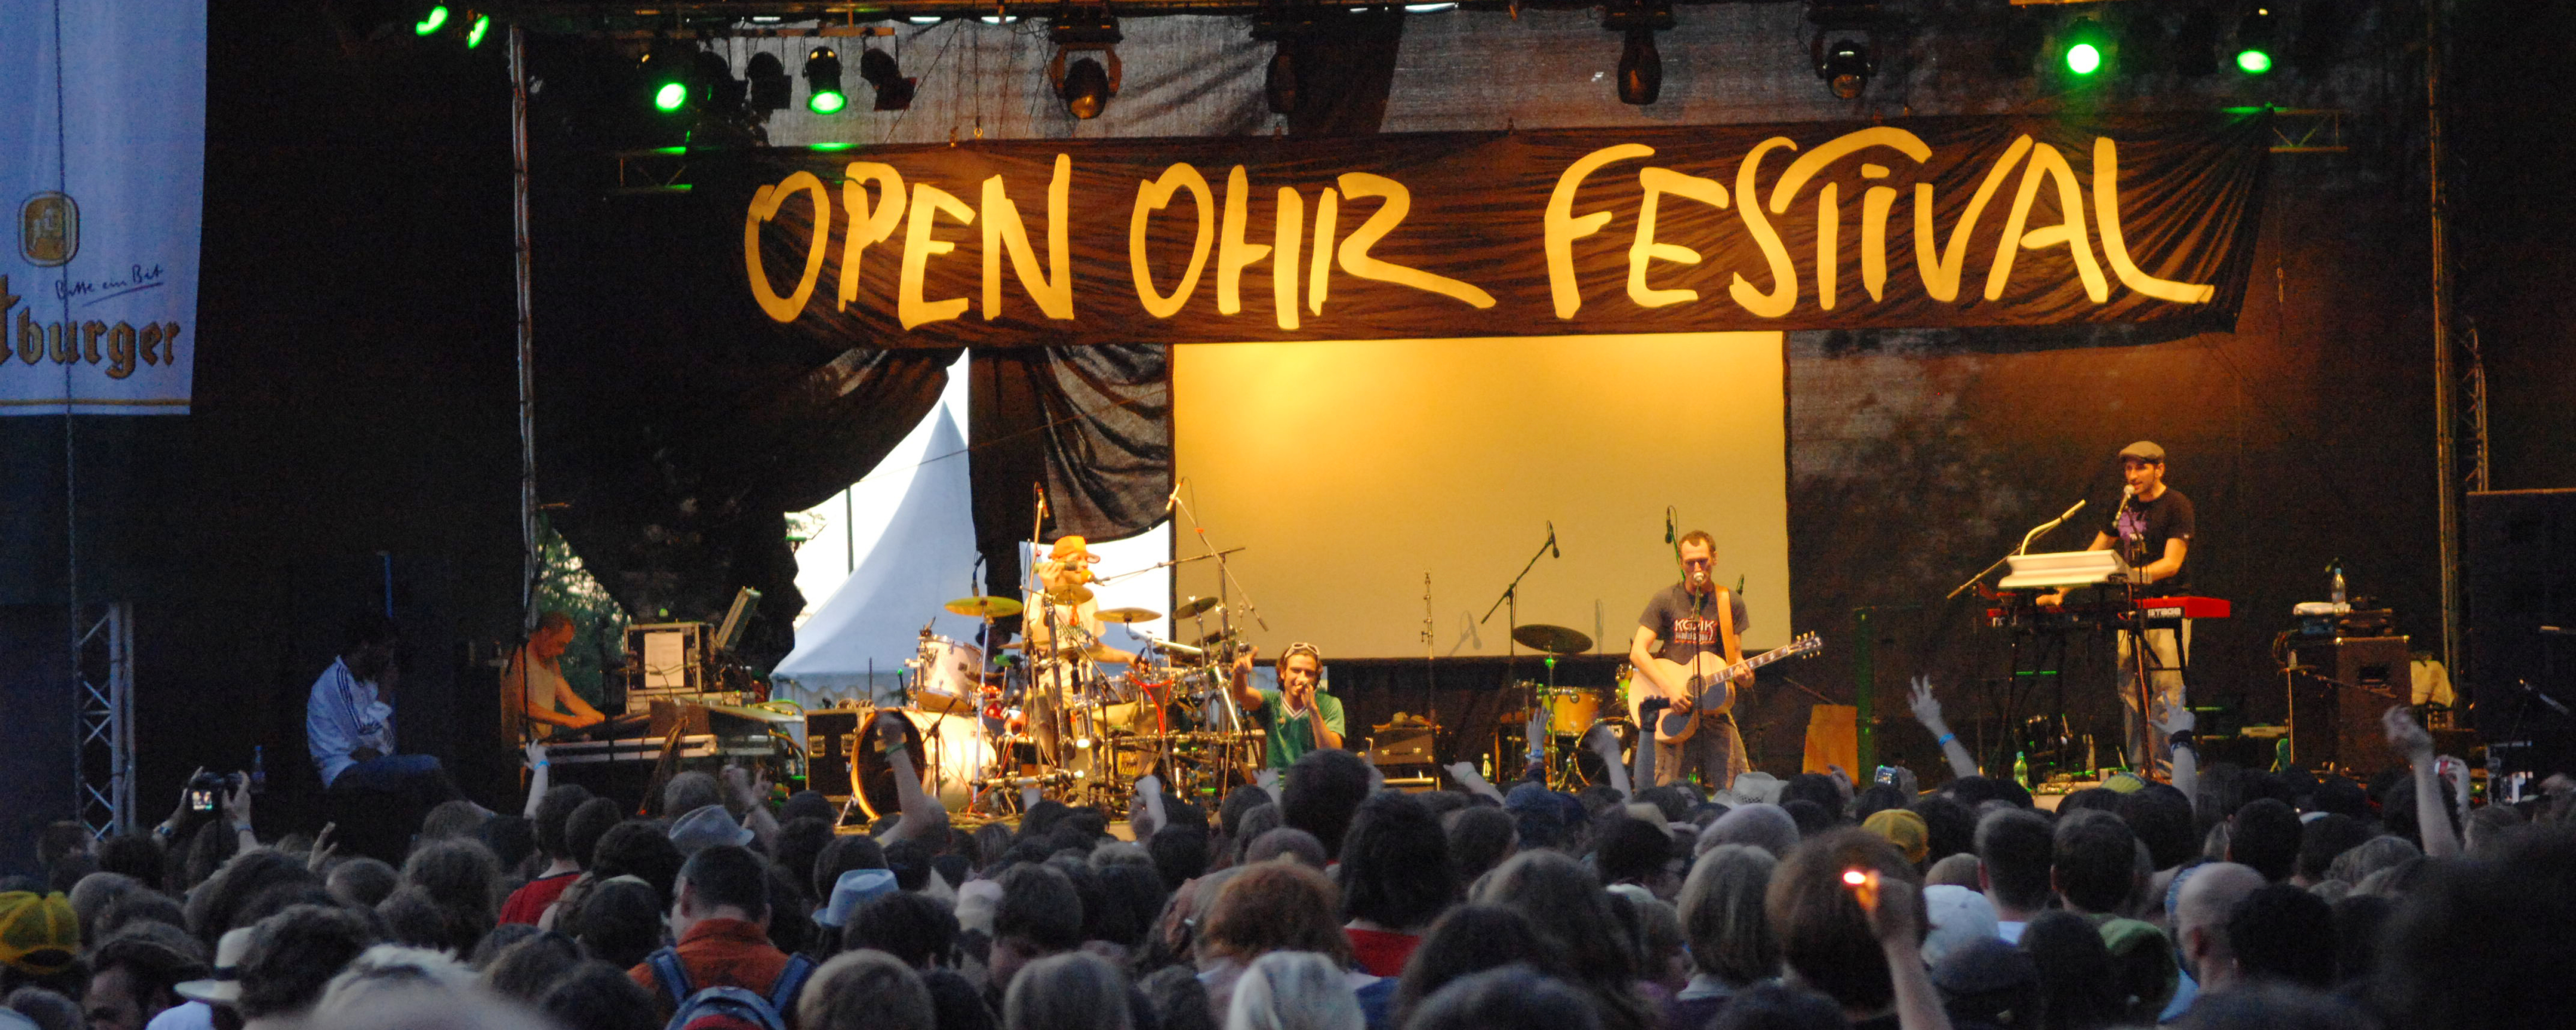 Zum Open Ohr Festival in Mainz mit dem RNN-KombiTicket (17.-20.5.)